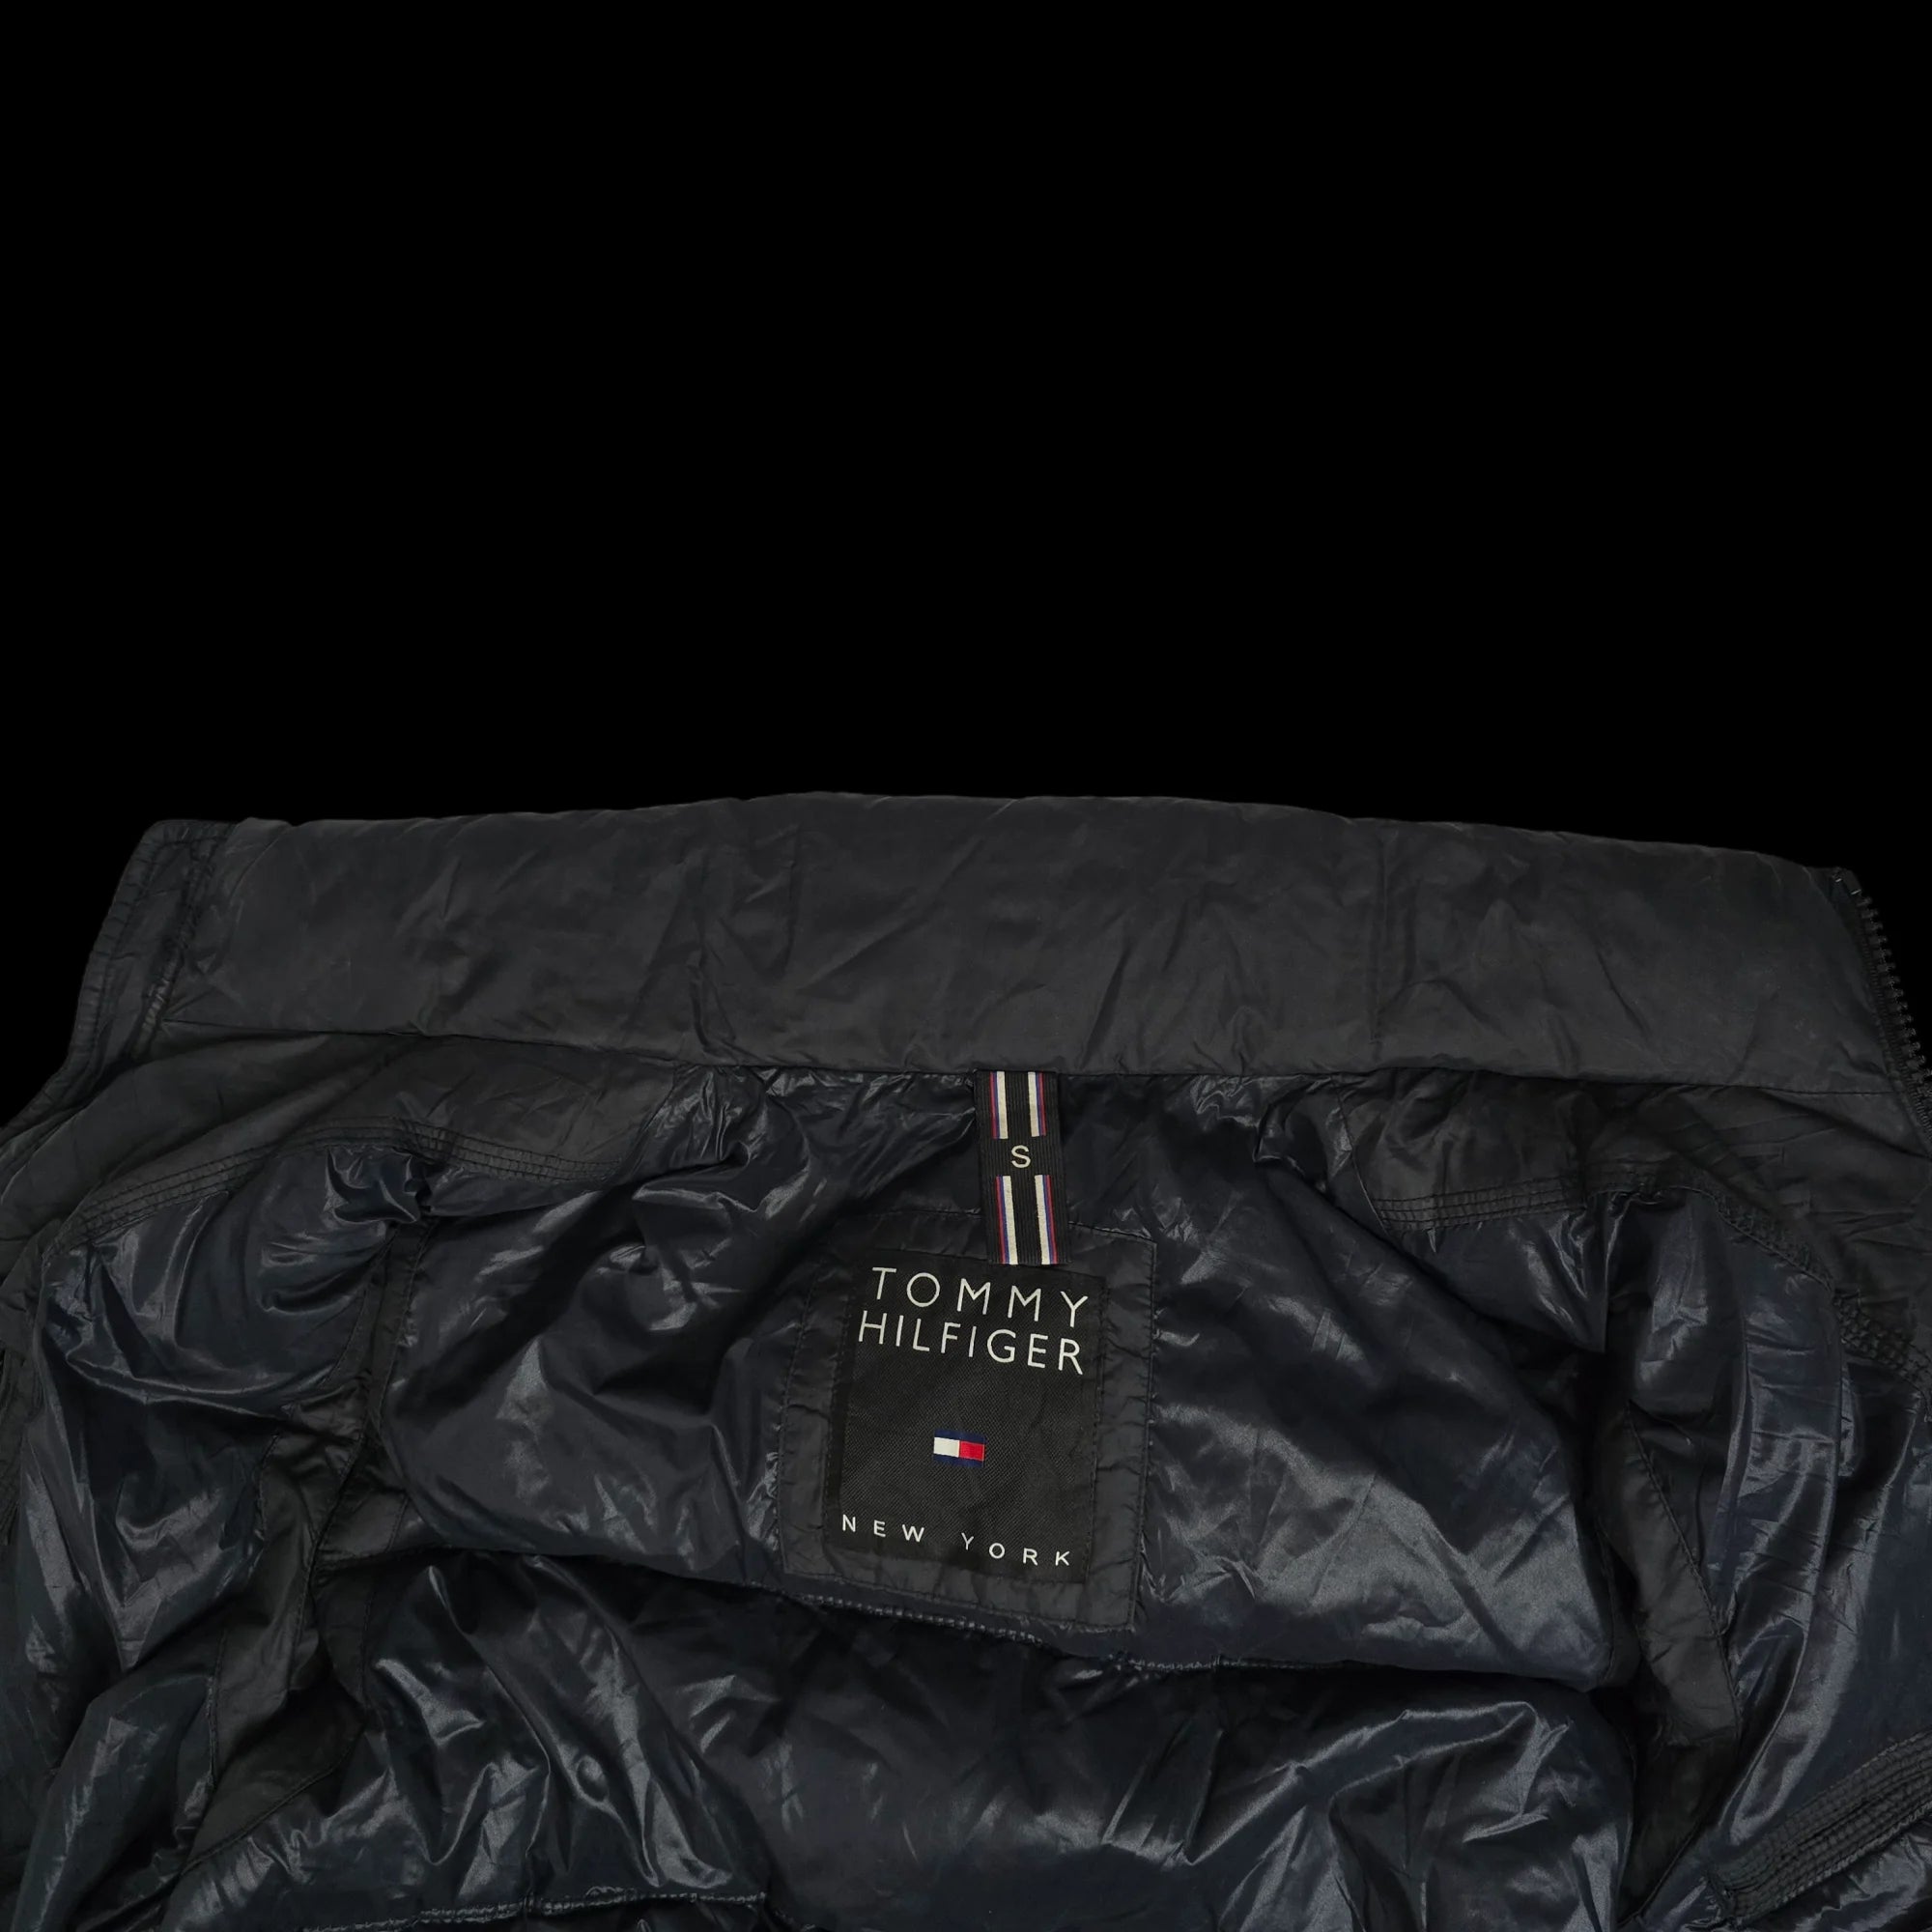 Unisex Tommy Hilfiger Black Gilet Jacket UK Small - 6 - 3464